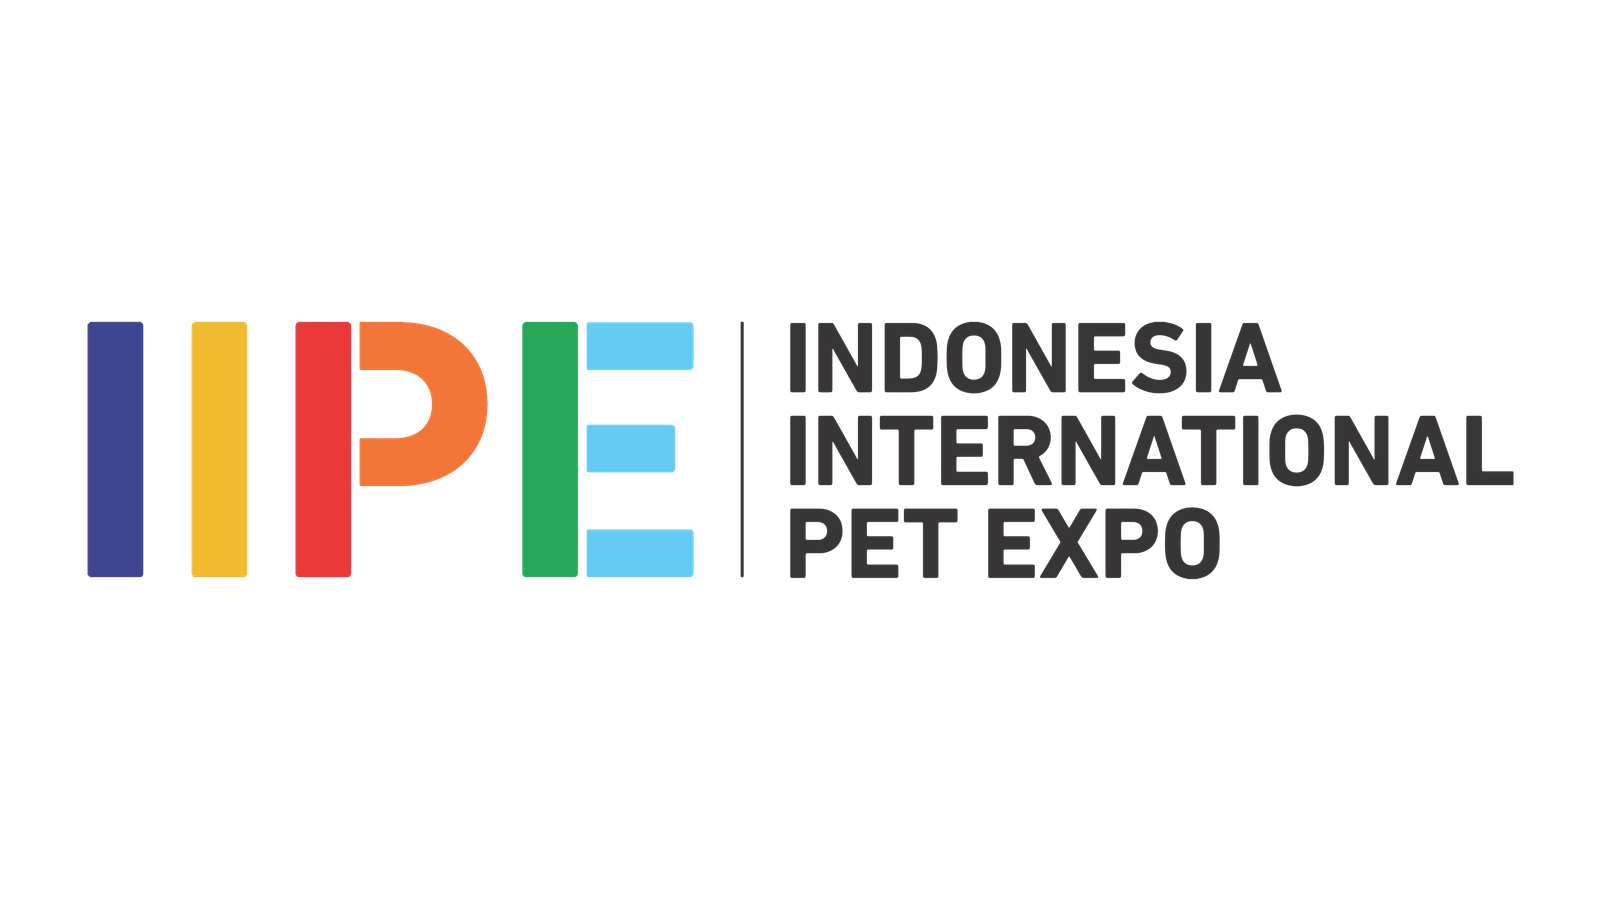 IIPE | Indonesia International Pet Expo Logo